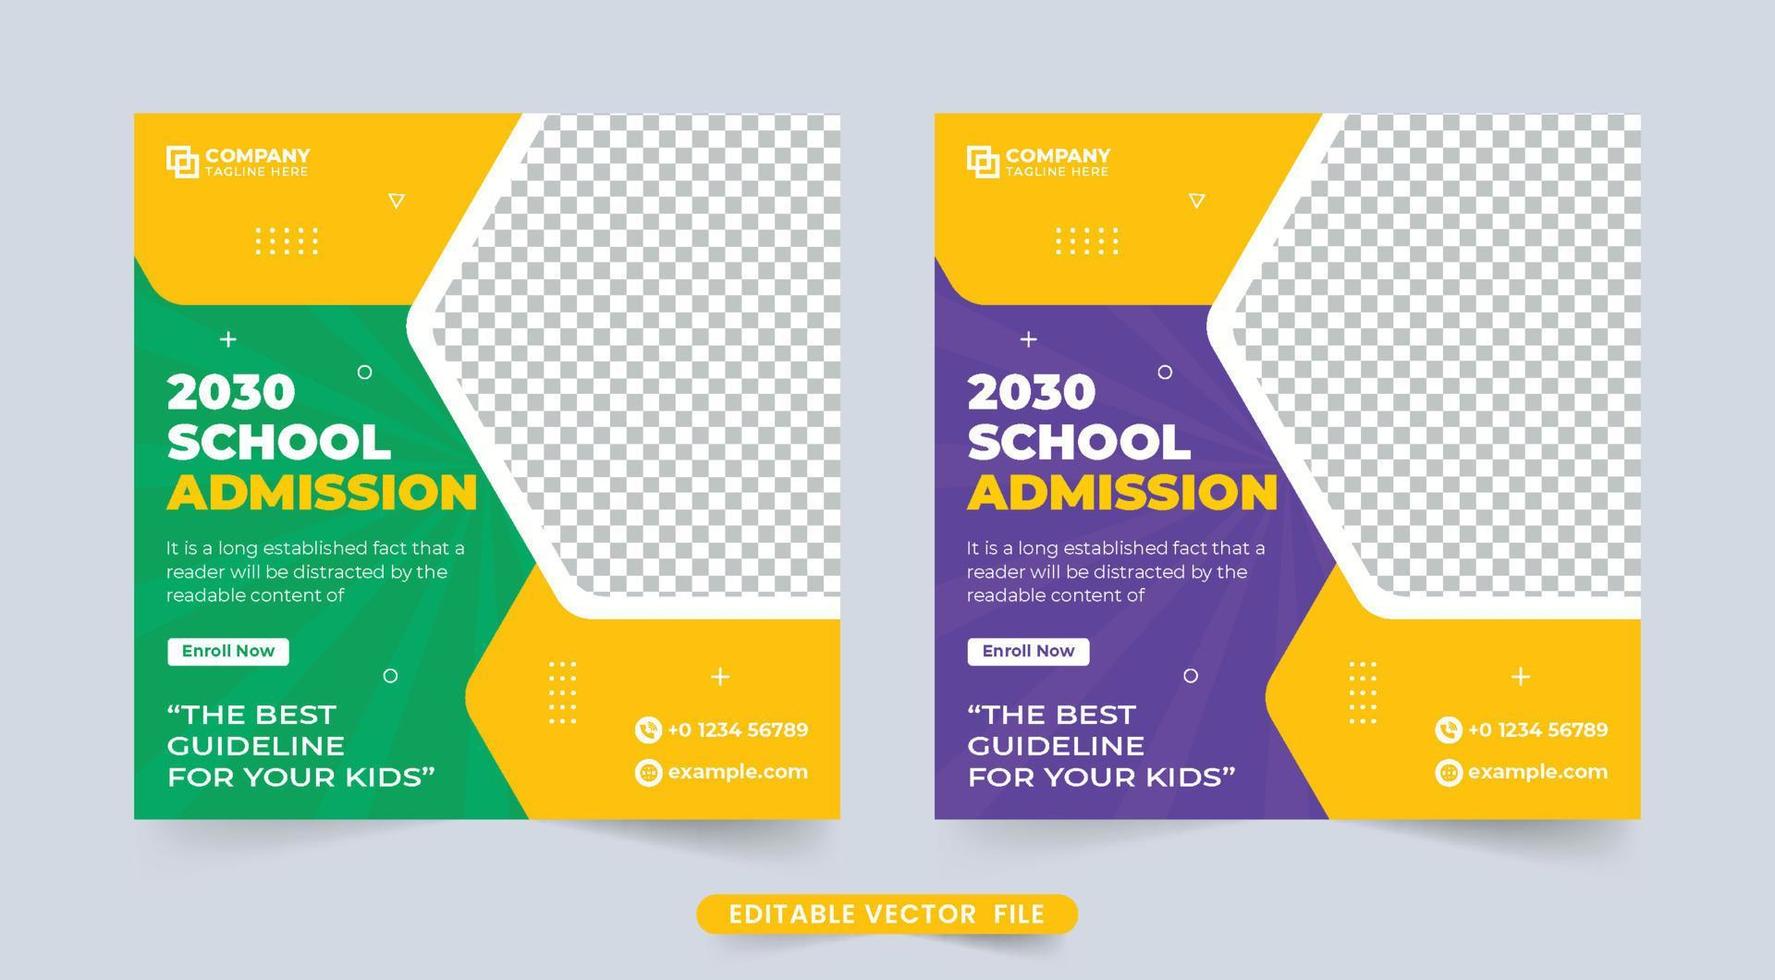 kreatives social-media-banner für die schulzulassung zur werbung. Back-to-School-Promotion-Vorlage mit grünen und lila Farben. Design von Webvorlagen für akademische Kurse und Zulassungen für Bildungszwecke. vektor